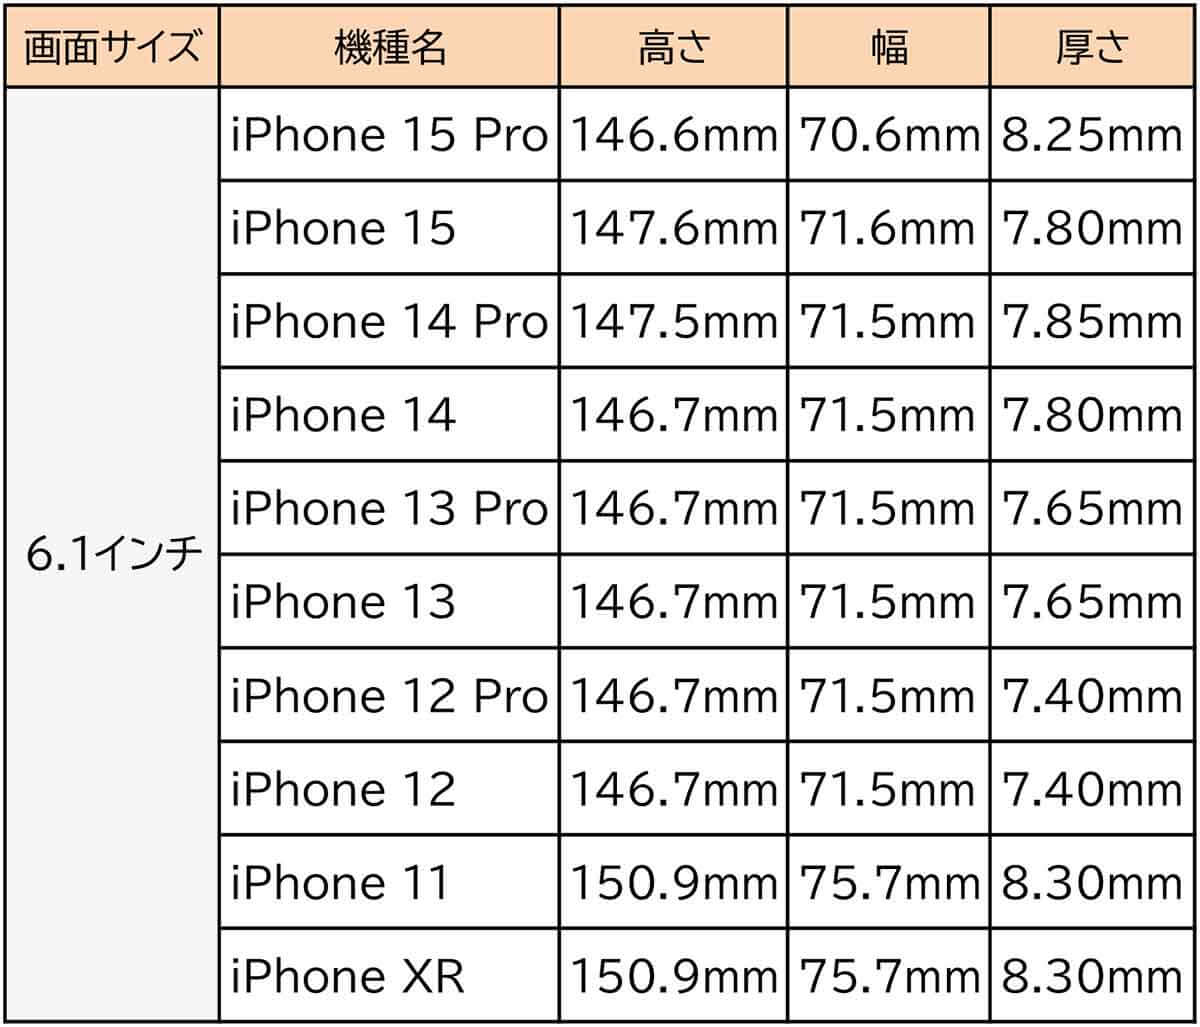 6.1インチのiPhoneの機種とサイズ1